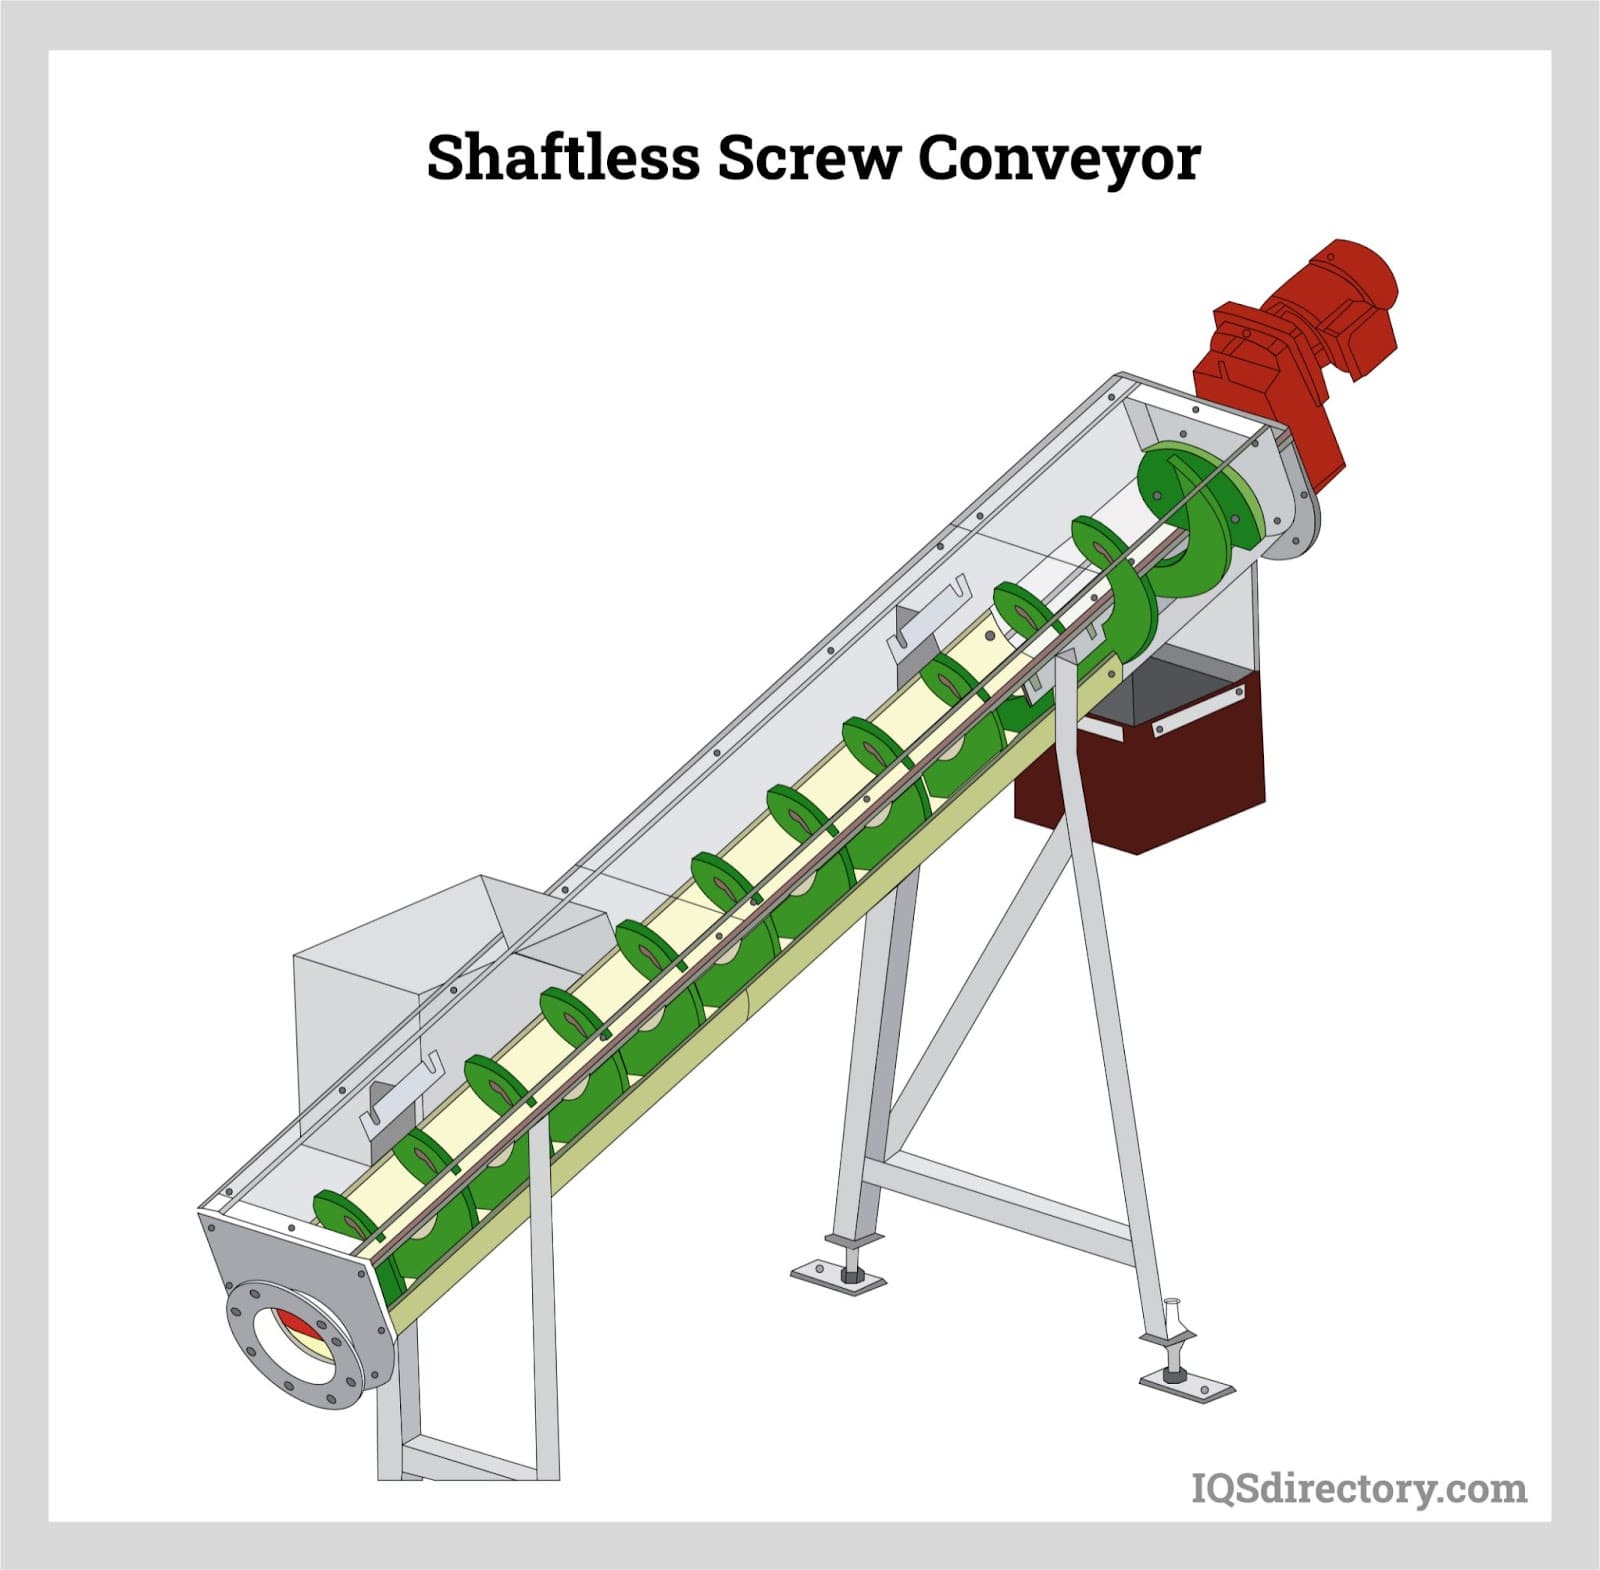 Shaftless Screw Conveyor